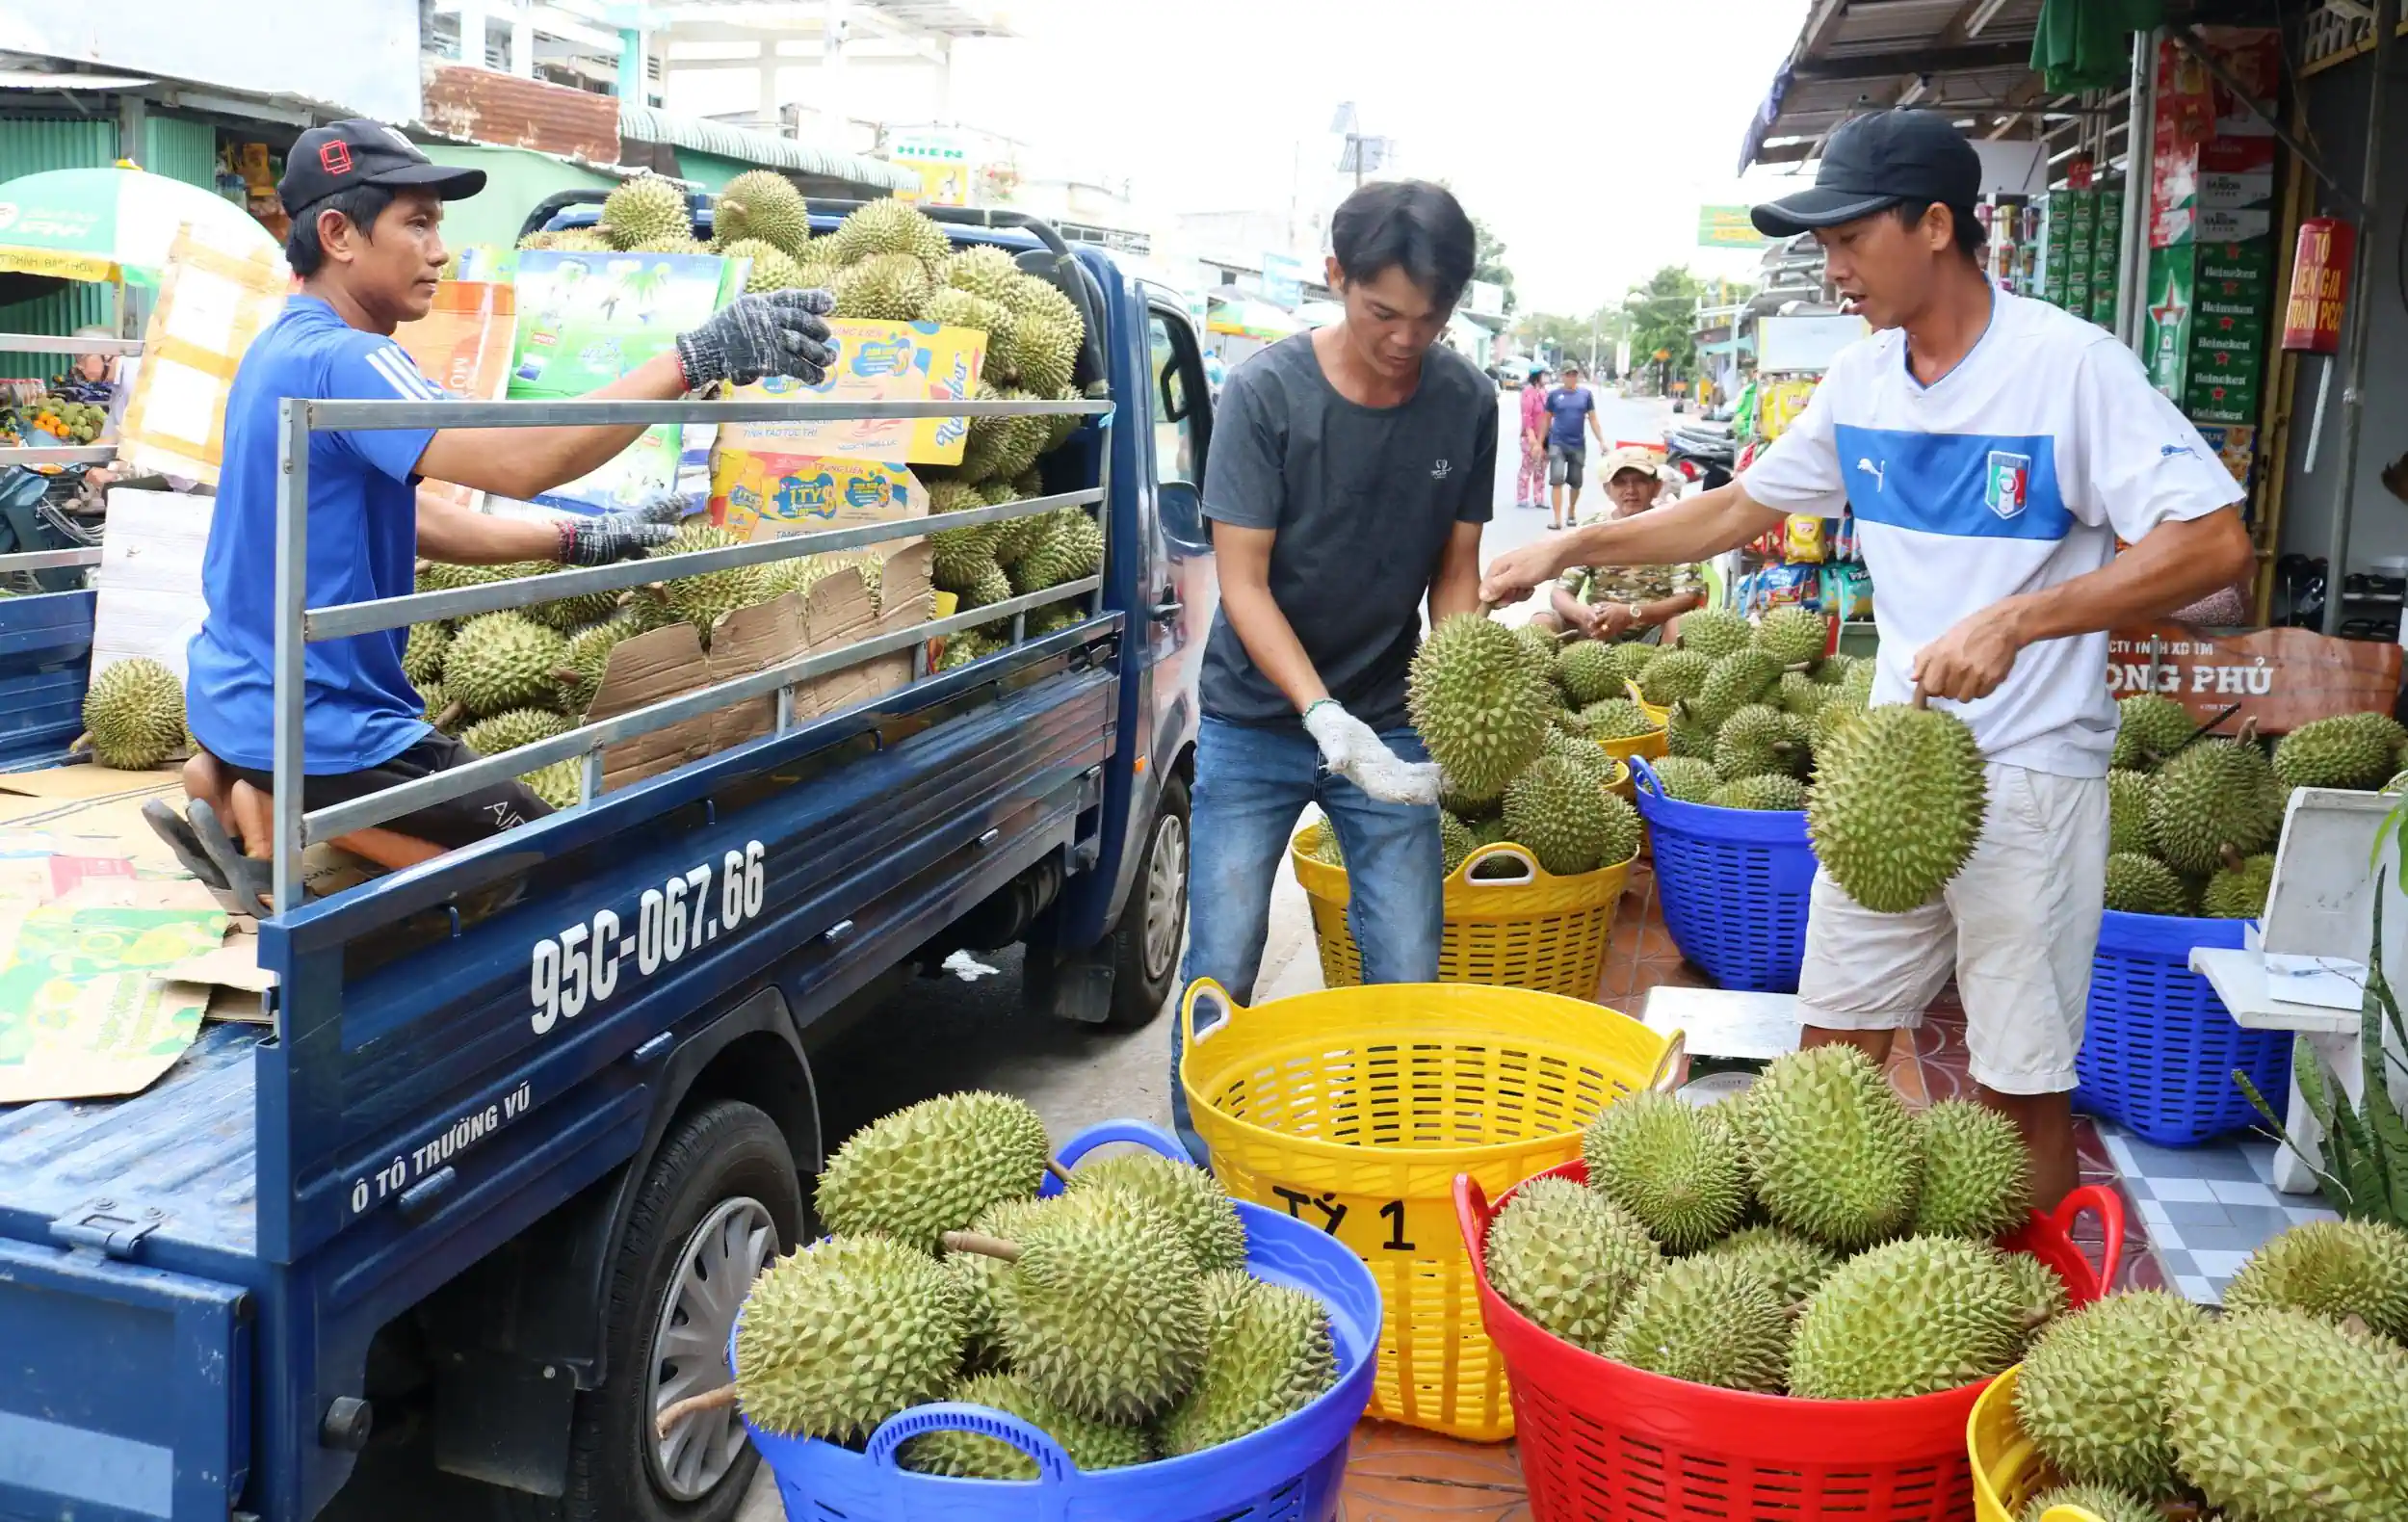 Sầu riêng đang là loại trái cây được xuất khẩu rất mạnh sang các thị trường khu vực Đông Bắc Á, nhất là Trung Quốc. Trong ảnh: Thu mua sầu riêng tại một vựa trái cây ở huyện Phong Điền, TP Cần Thơ.